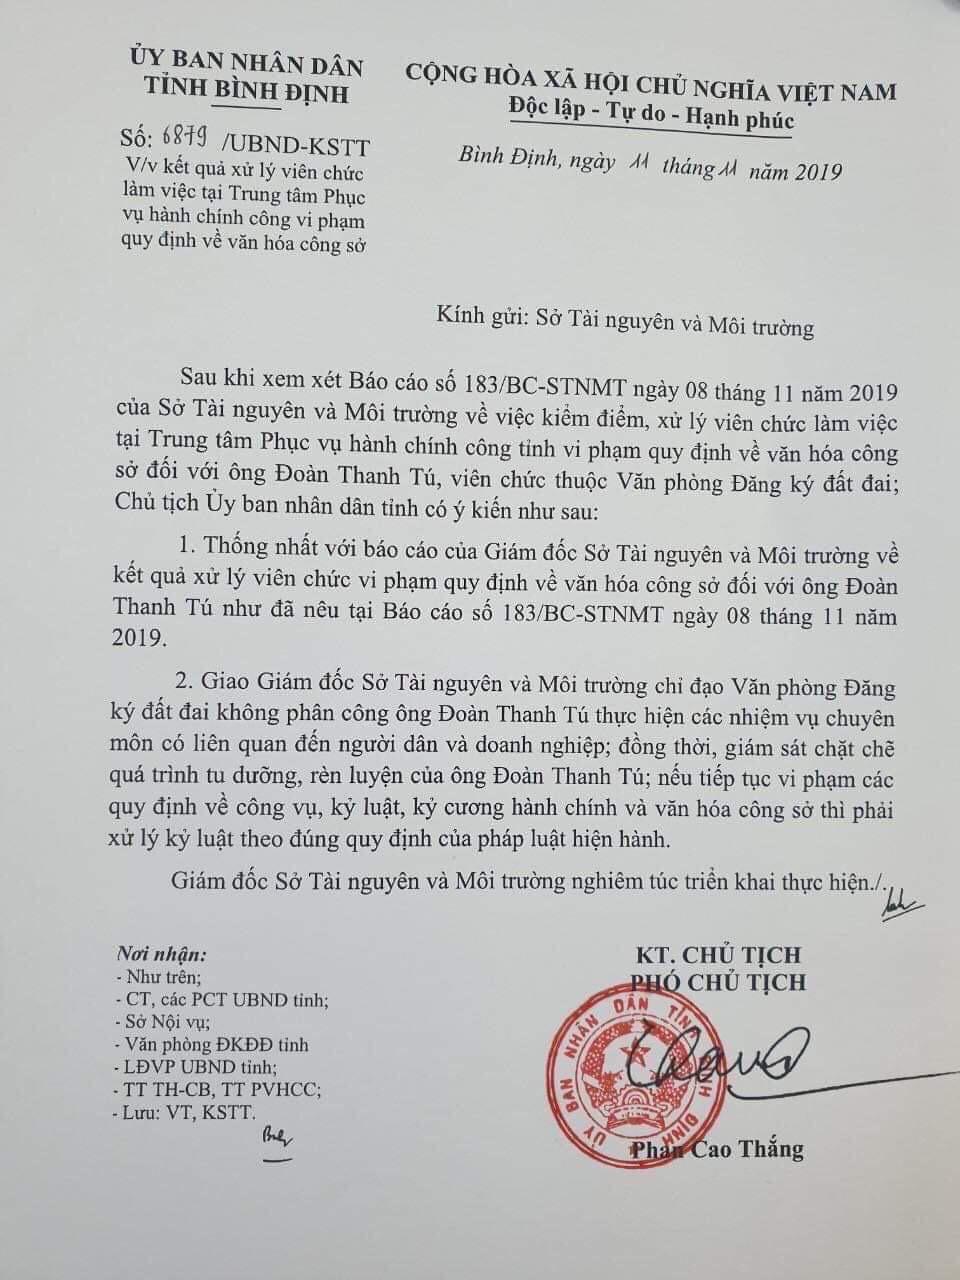 Văn bản của UBND tỉnh Bình Định về việc xử lý vi phạm văn hóa công sở đối với ông Đoàn Thanh Tú